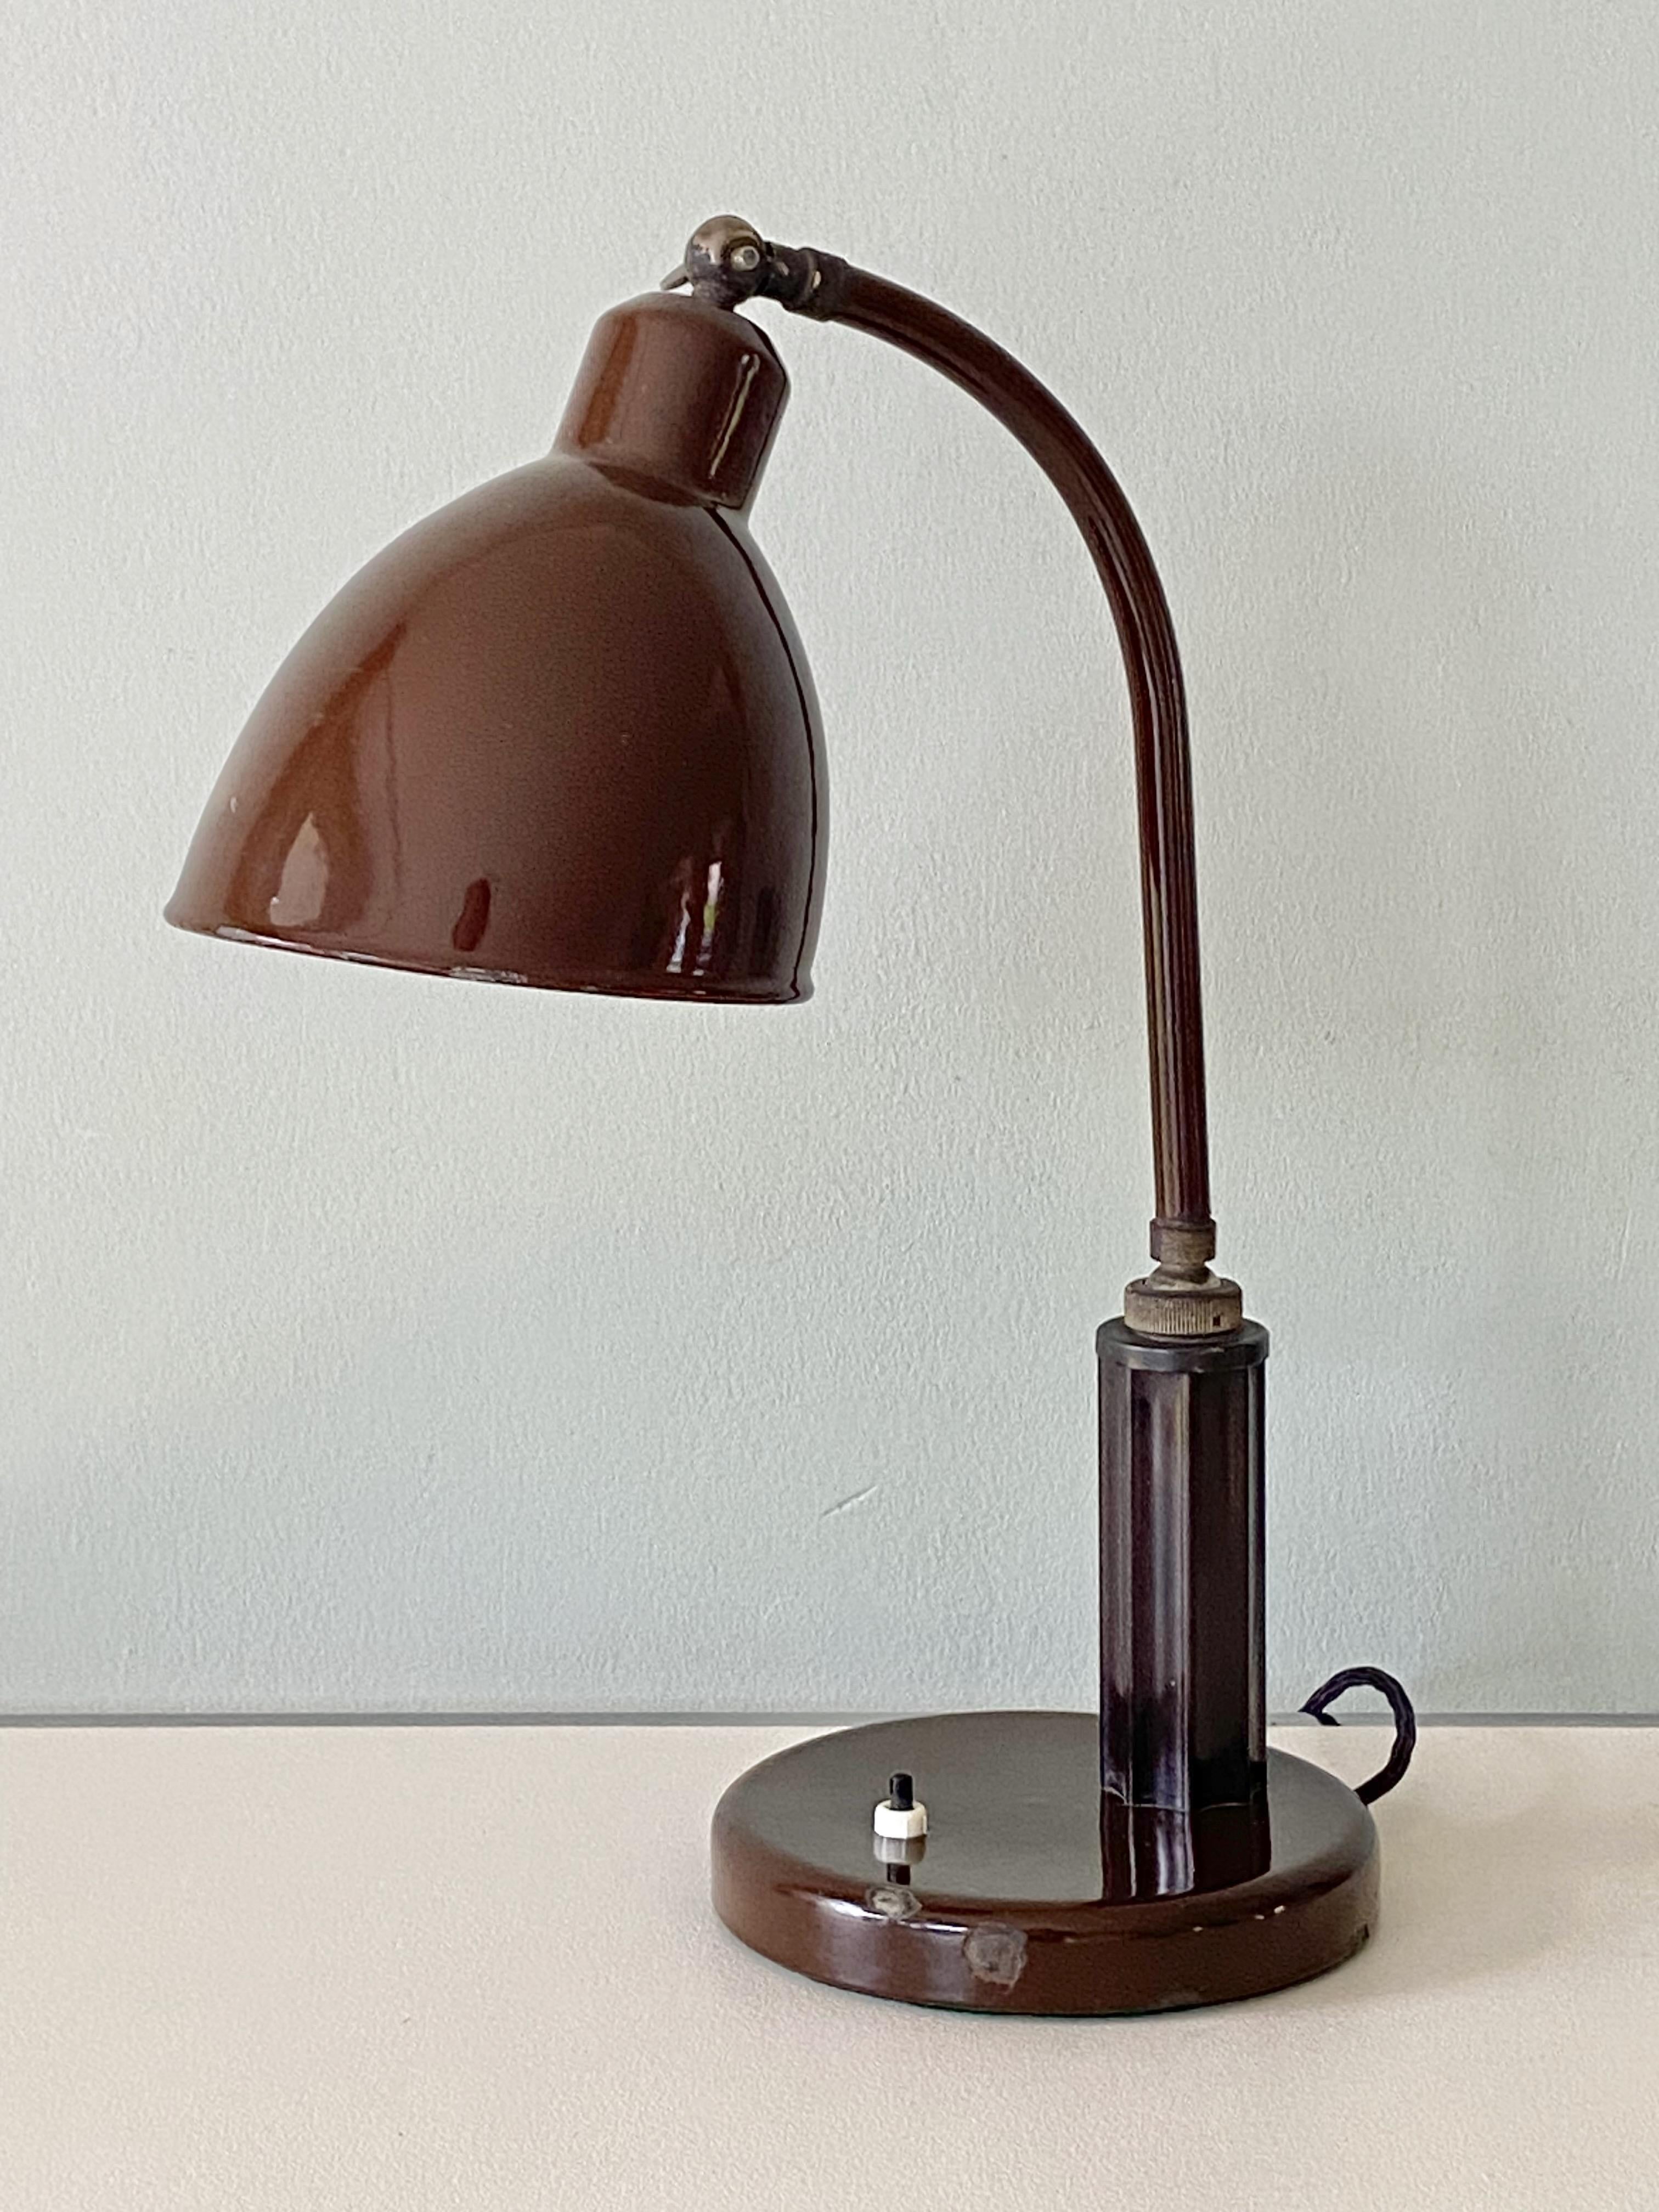 Molitor Grapholux Lampe Brown Emaille und Bakelit Stick von Christian Dell 1930s (Mitte des 20. Jahrhunderts) im Angebot